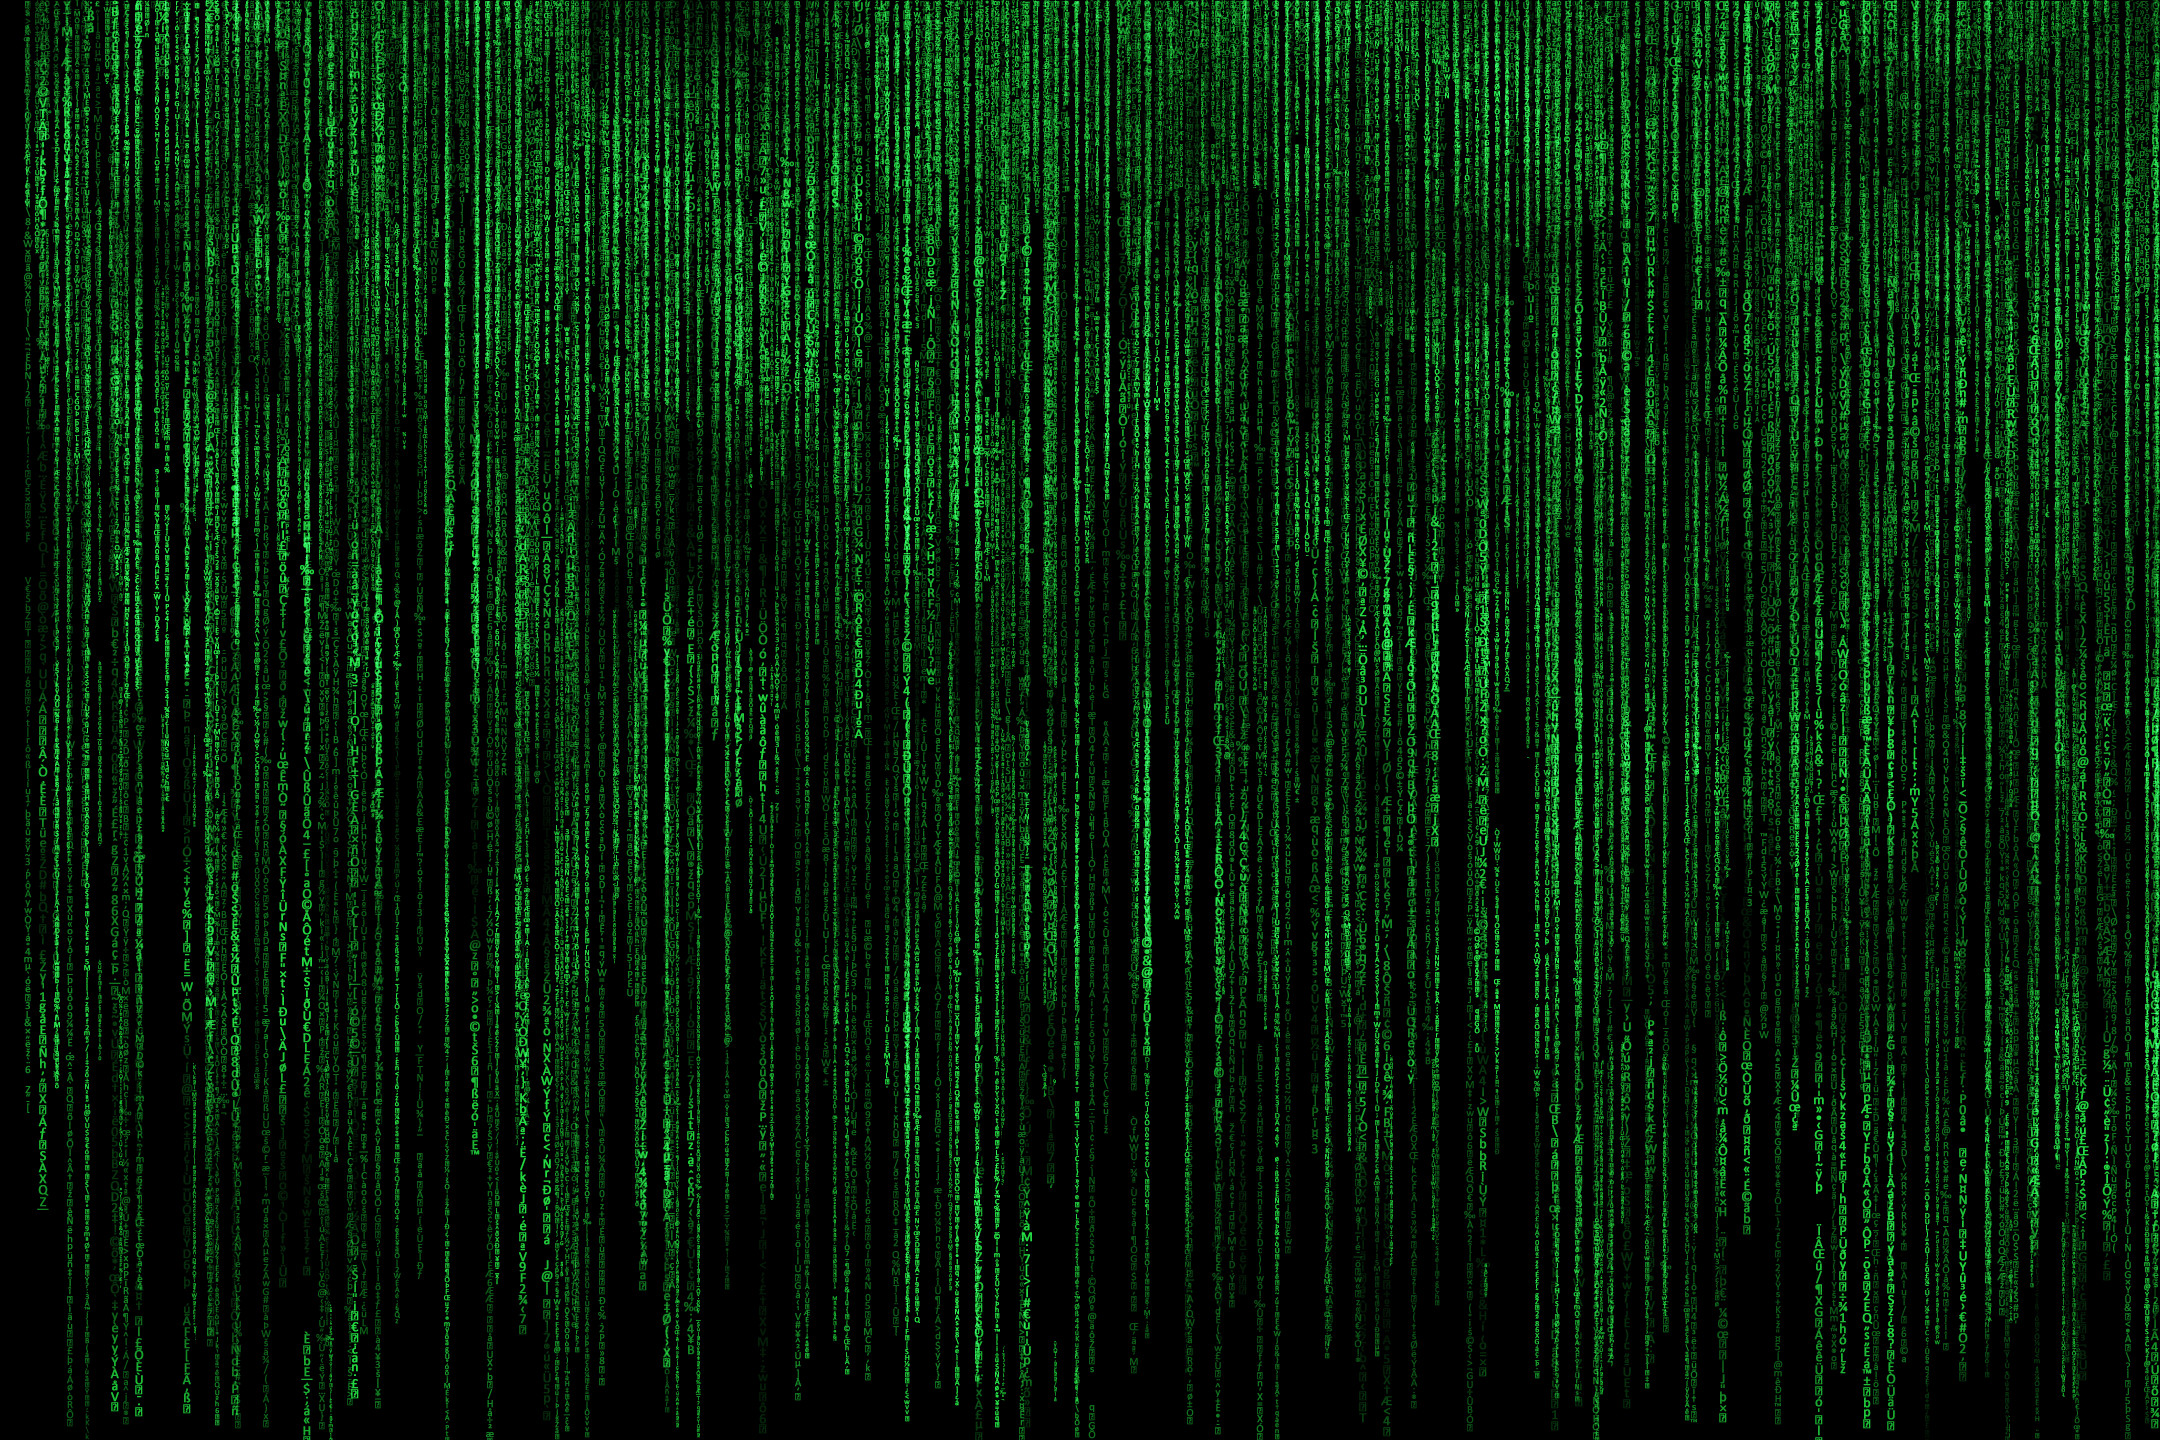 2160x1440 The Matrix HD Wallpaper | Hintergrund |  | ID:649328 - Wallpaper  Abyss